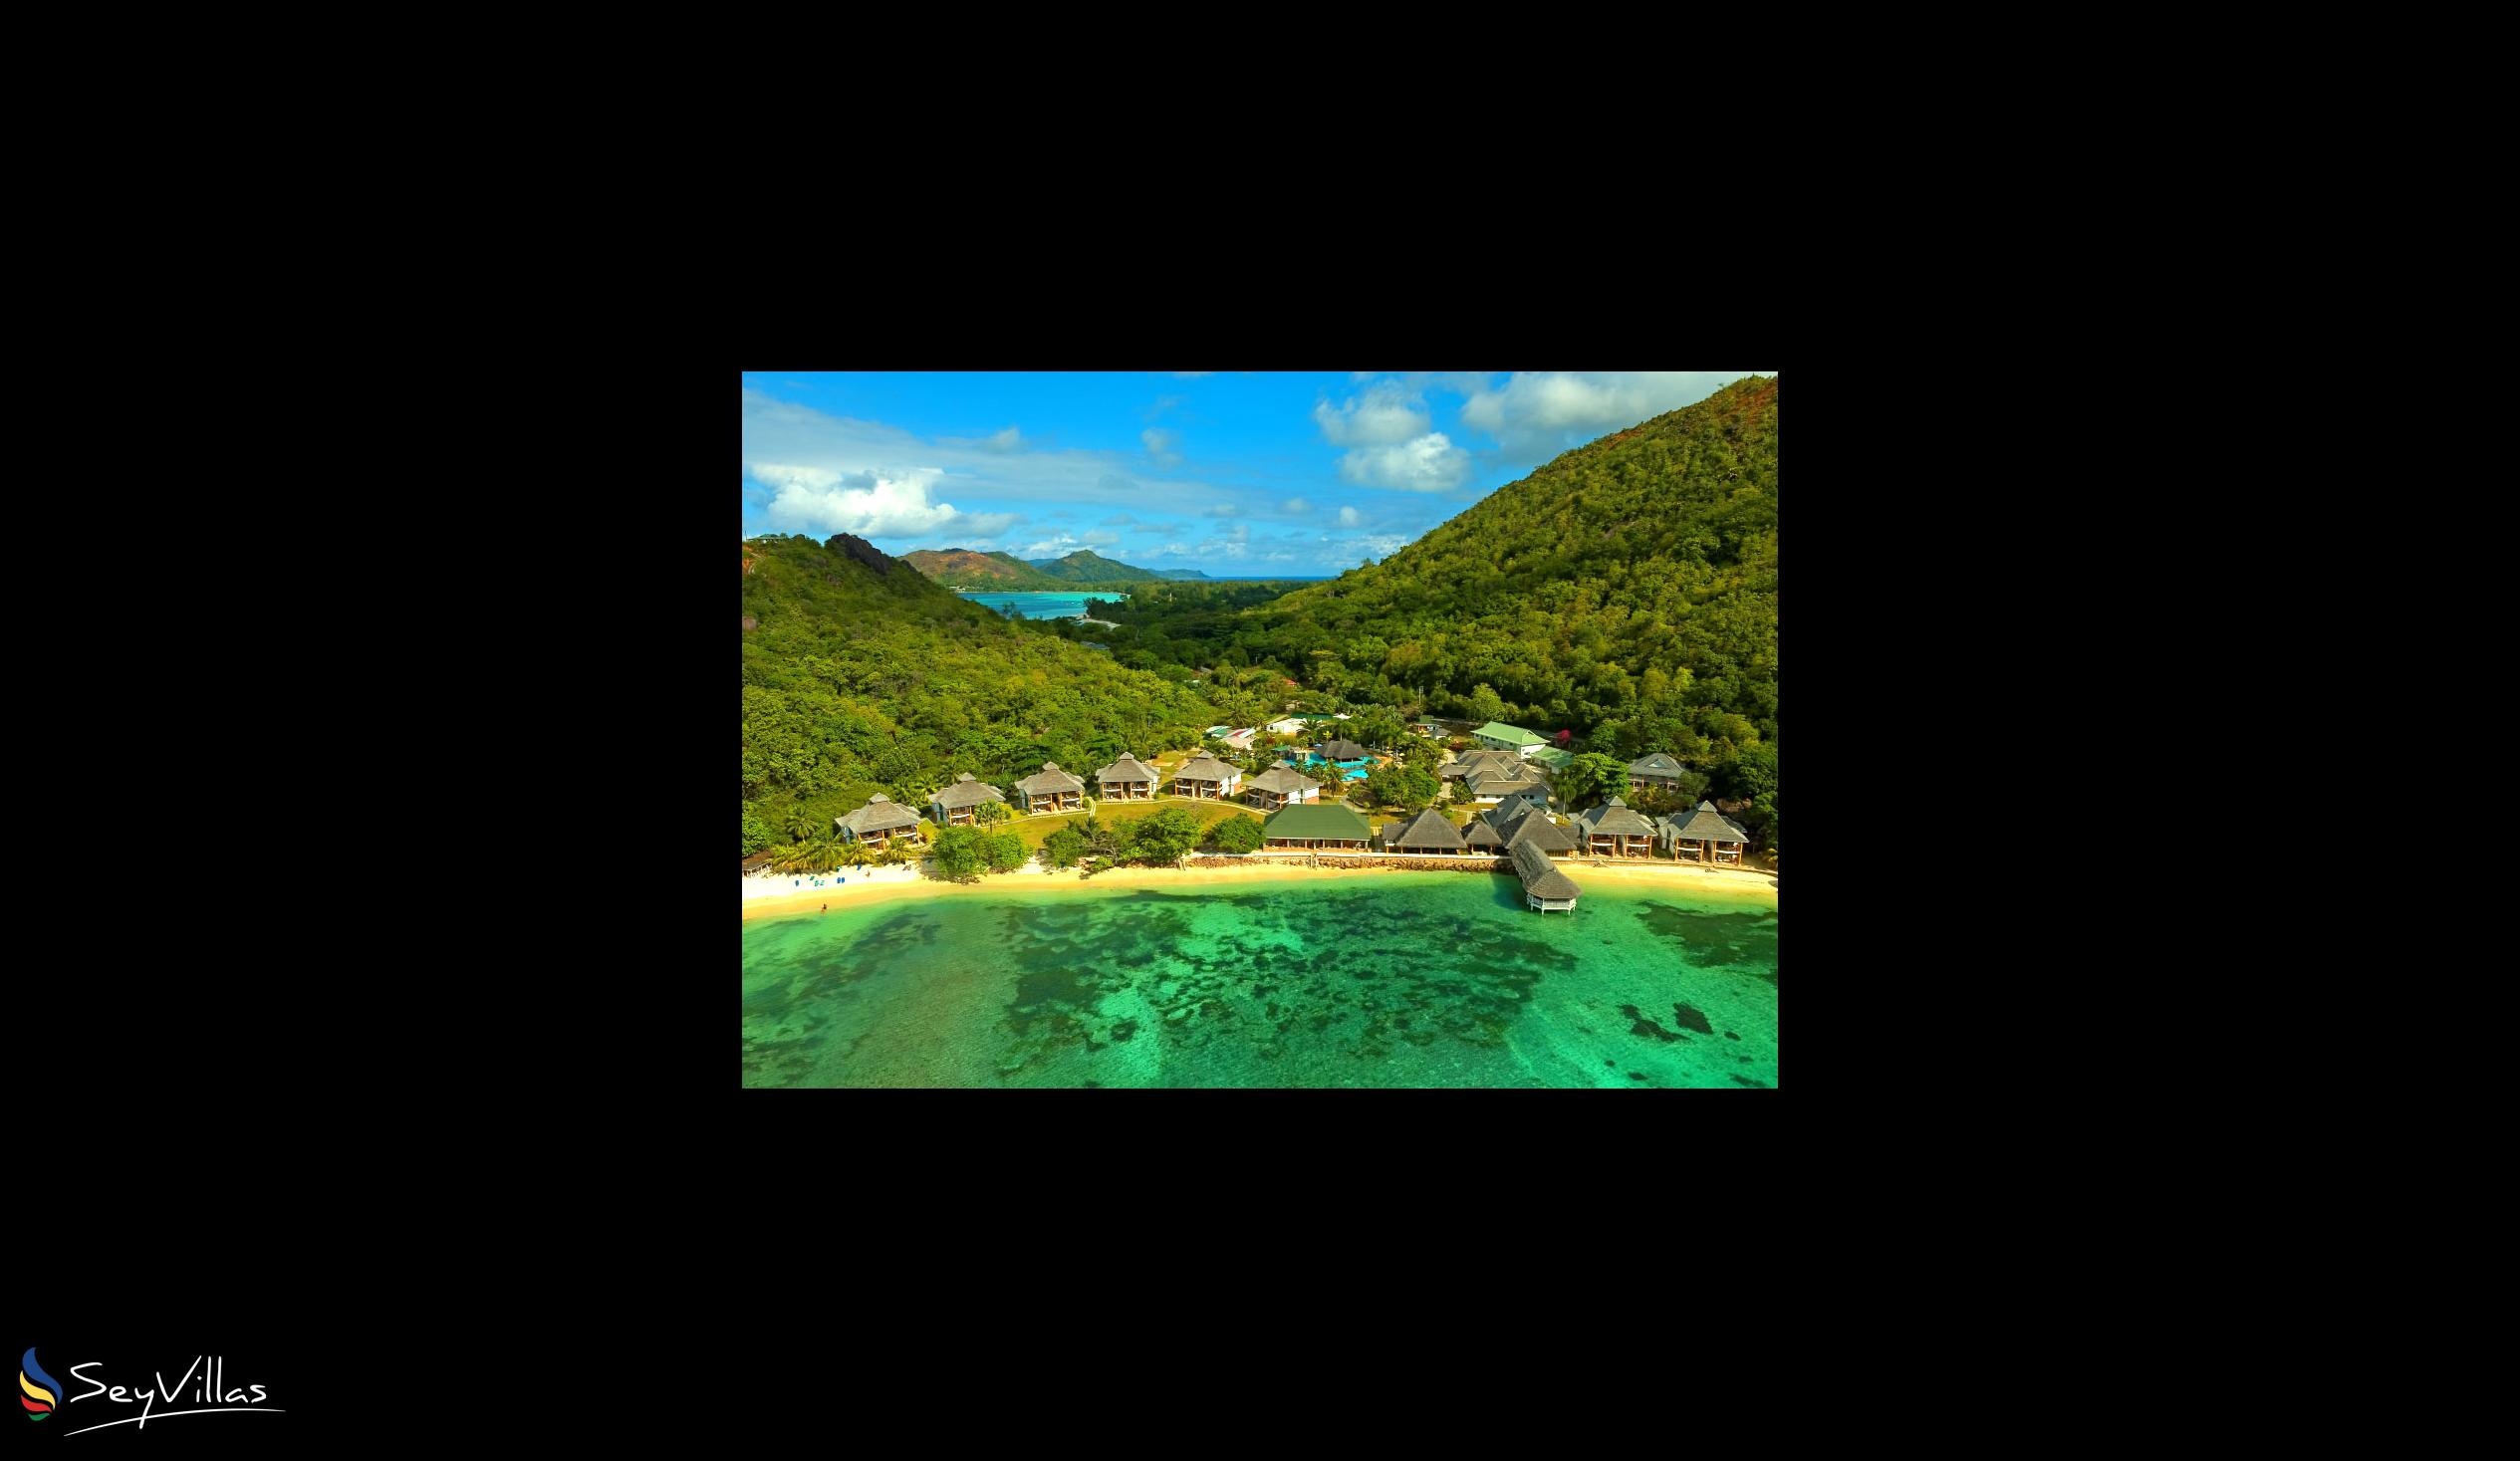 Foto 7: Le Domaine de La Reserve - Aussenbereich - Praslin (Seychellen)